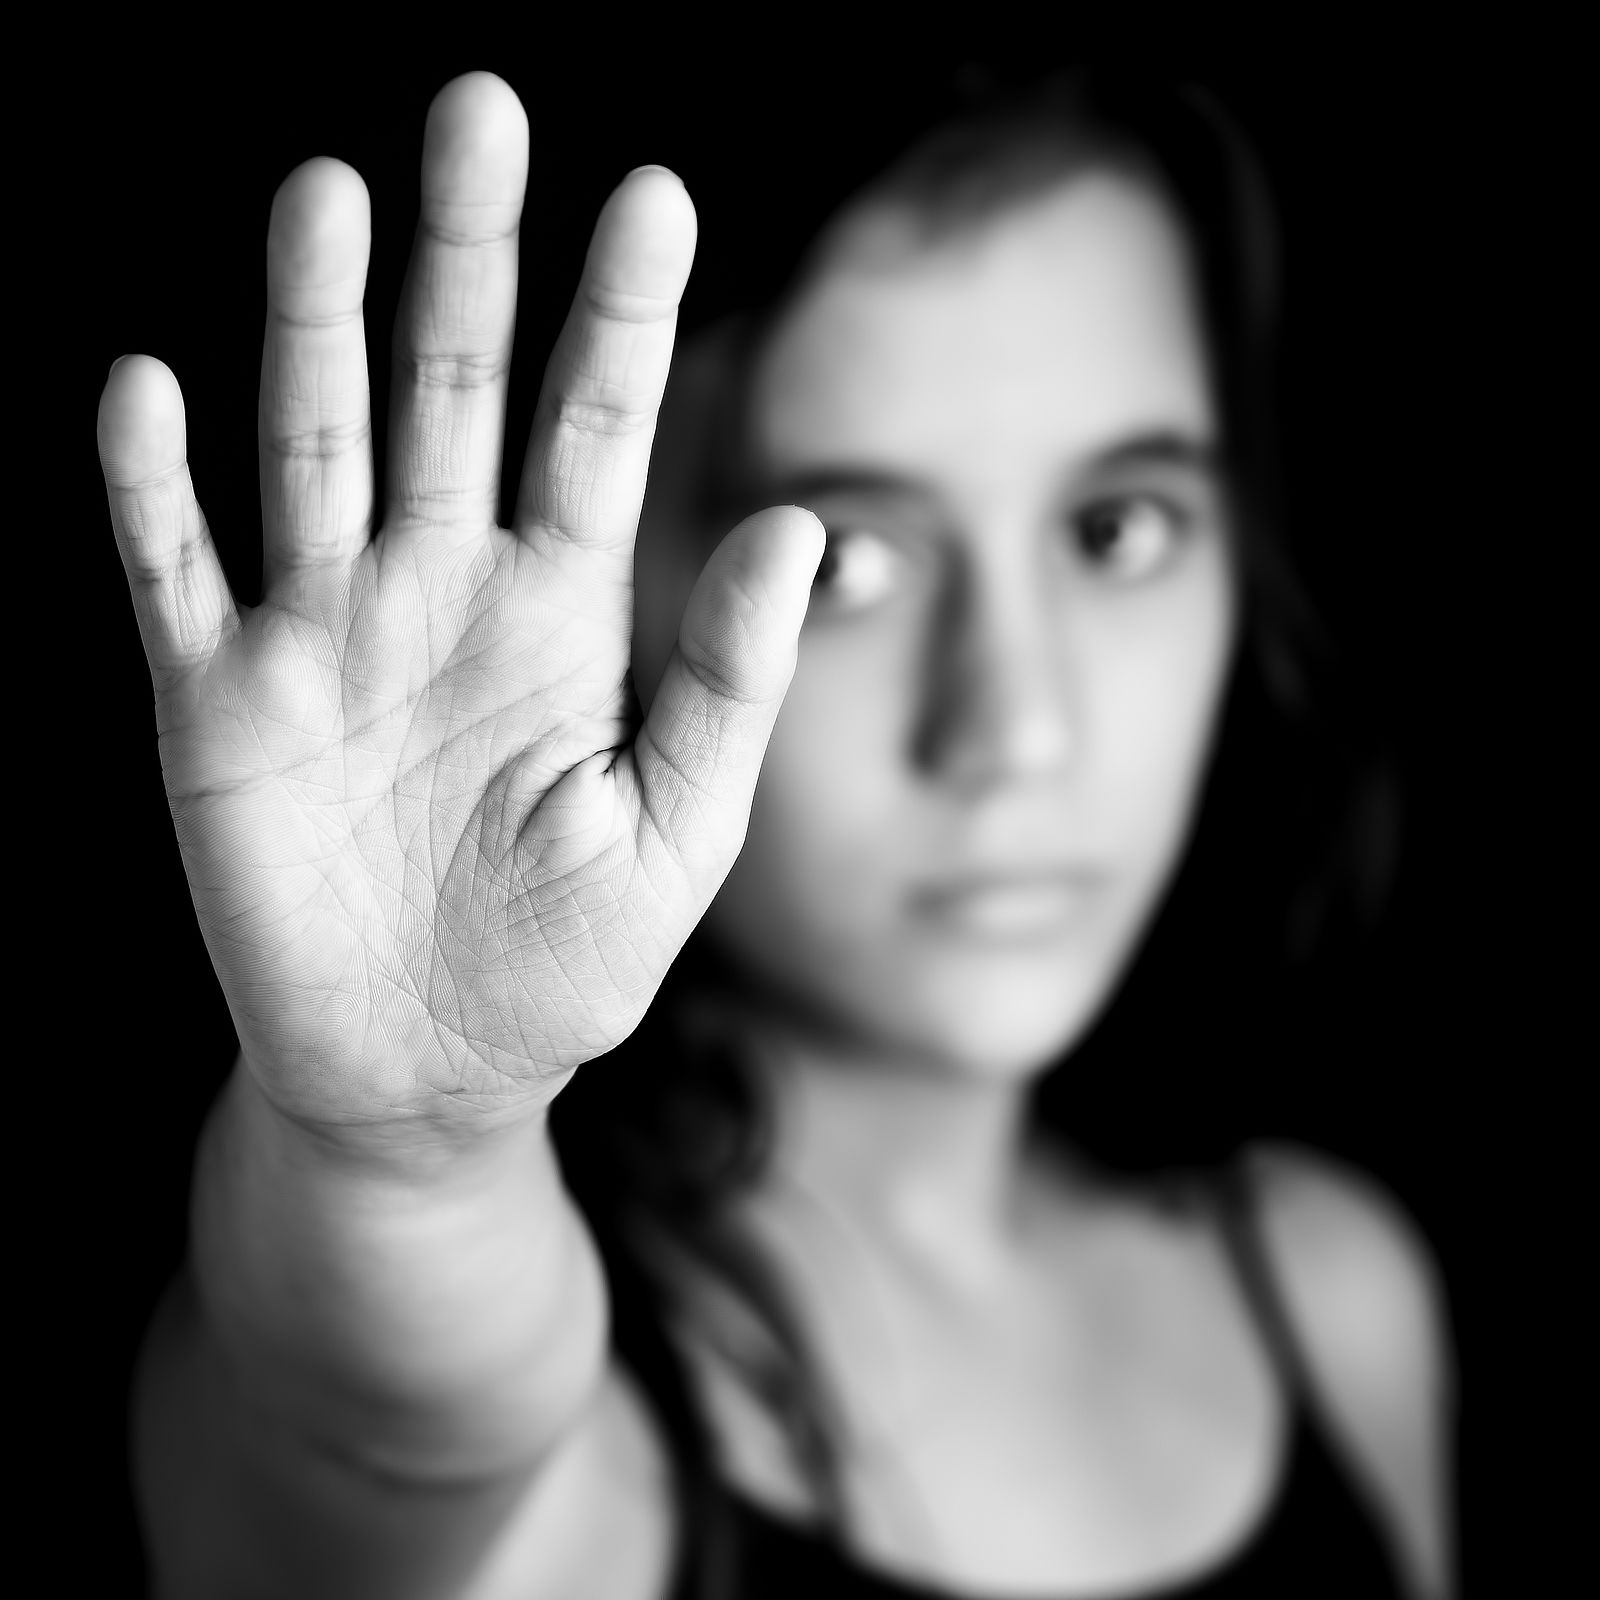 Mädchen signalisiert STOP mit flacher Hand; Kampagne gegen Gewalt, Gender und sexuelle Diskriminierung